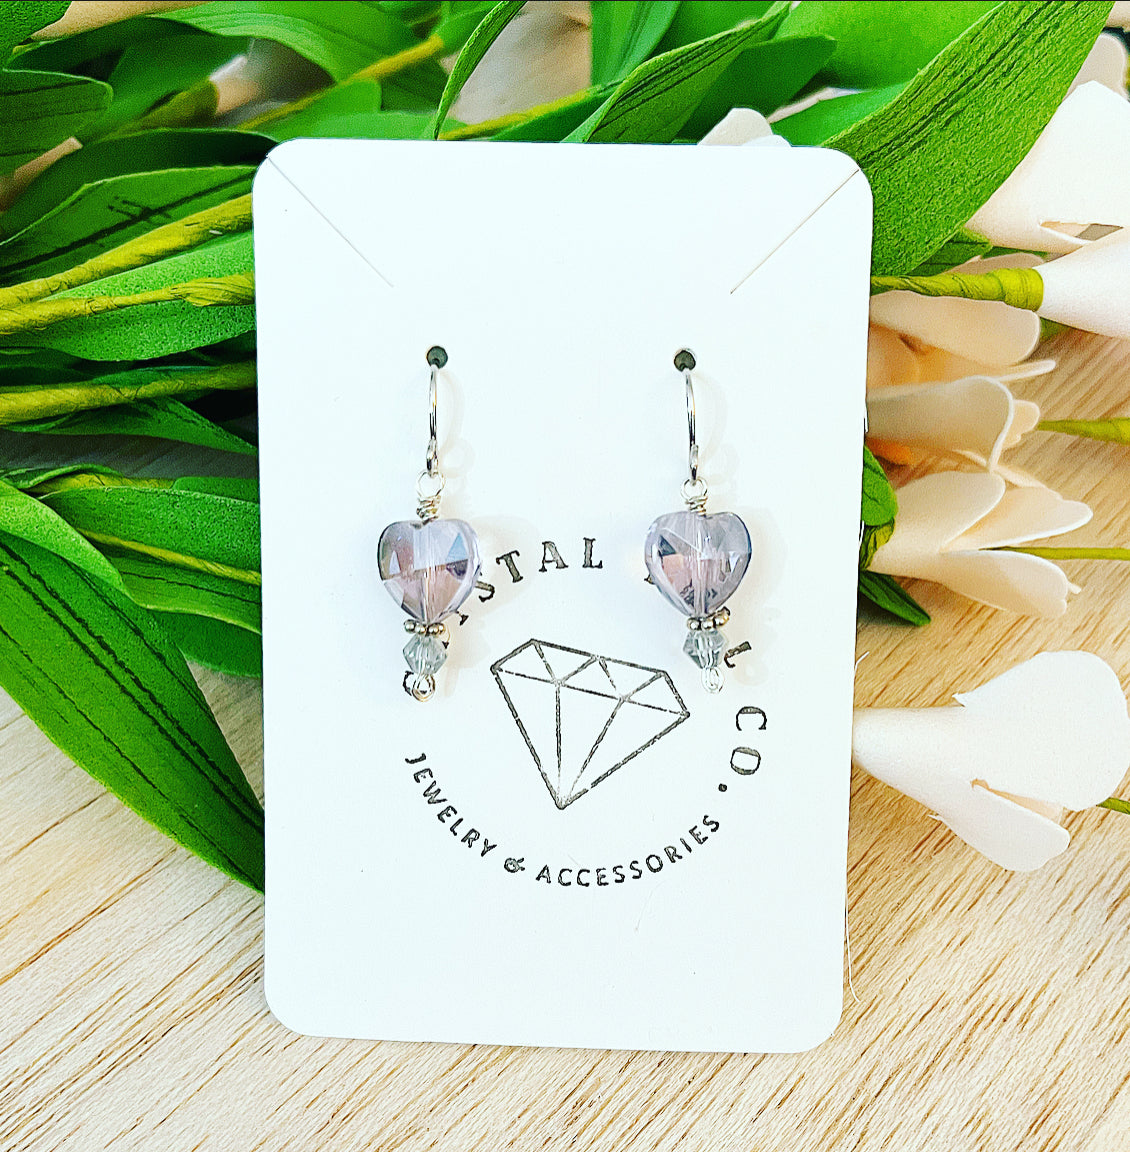 Heart Crystal Earrings